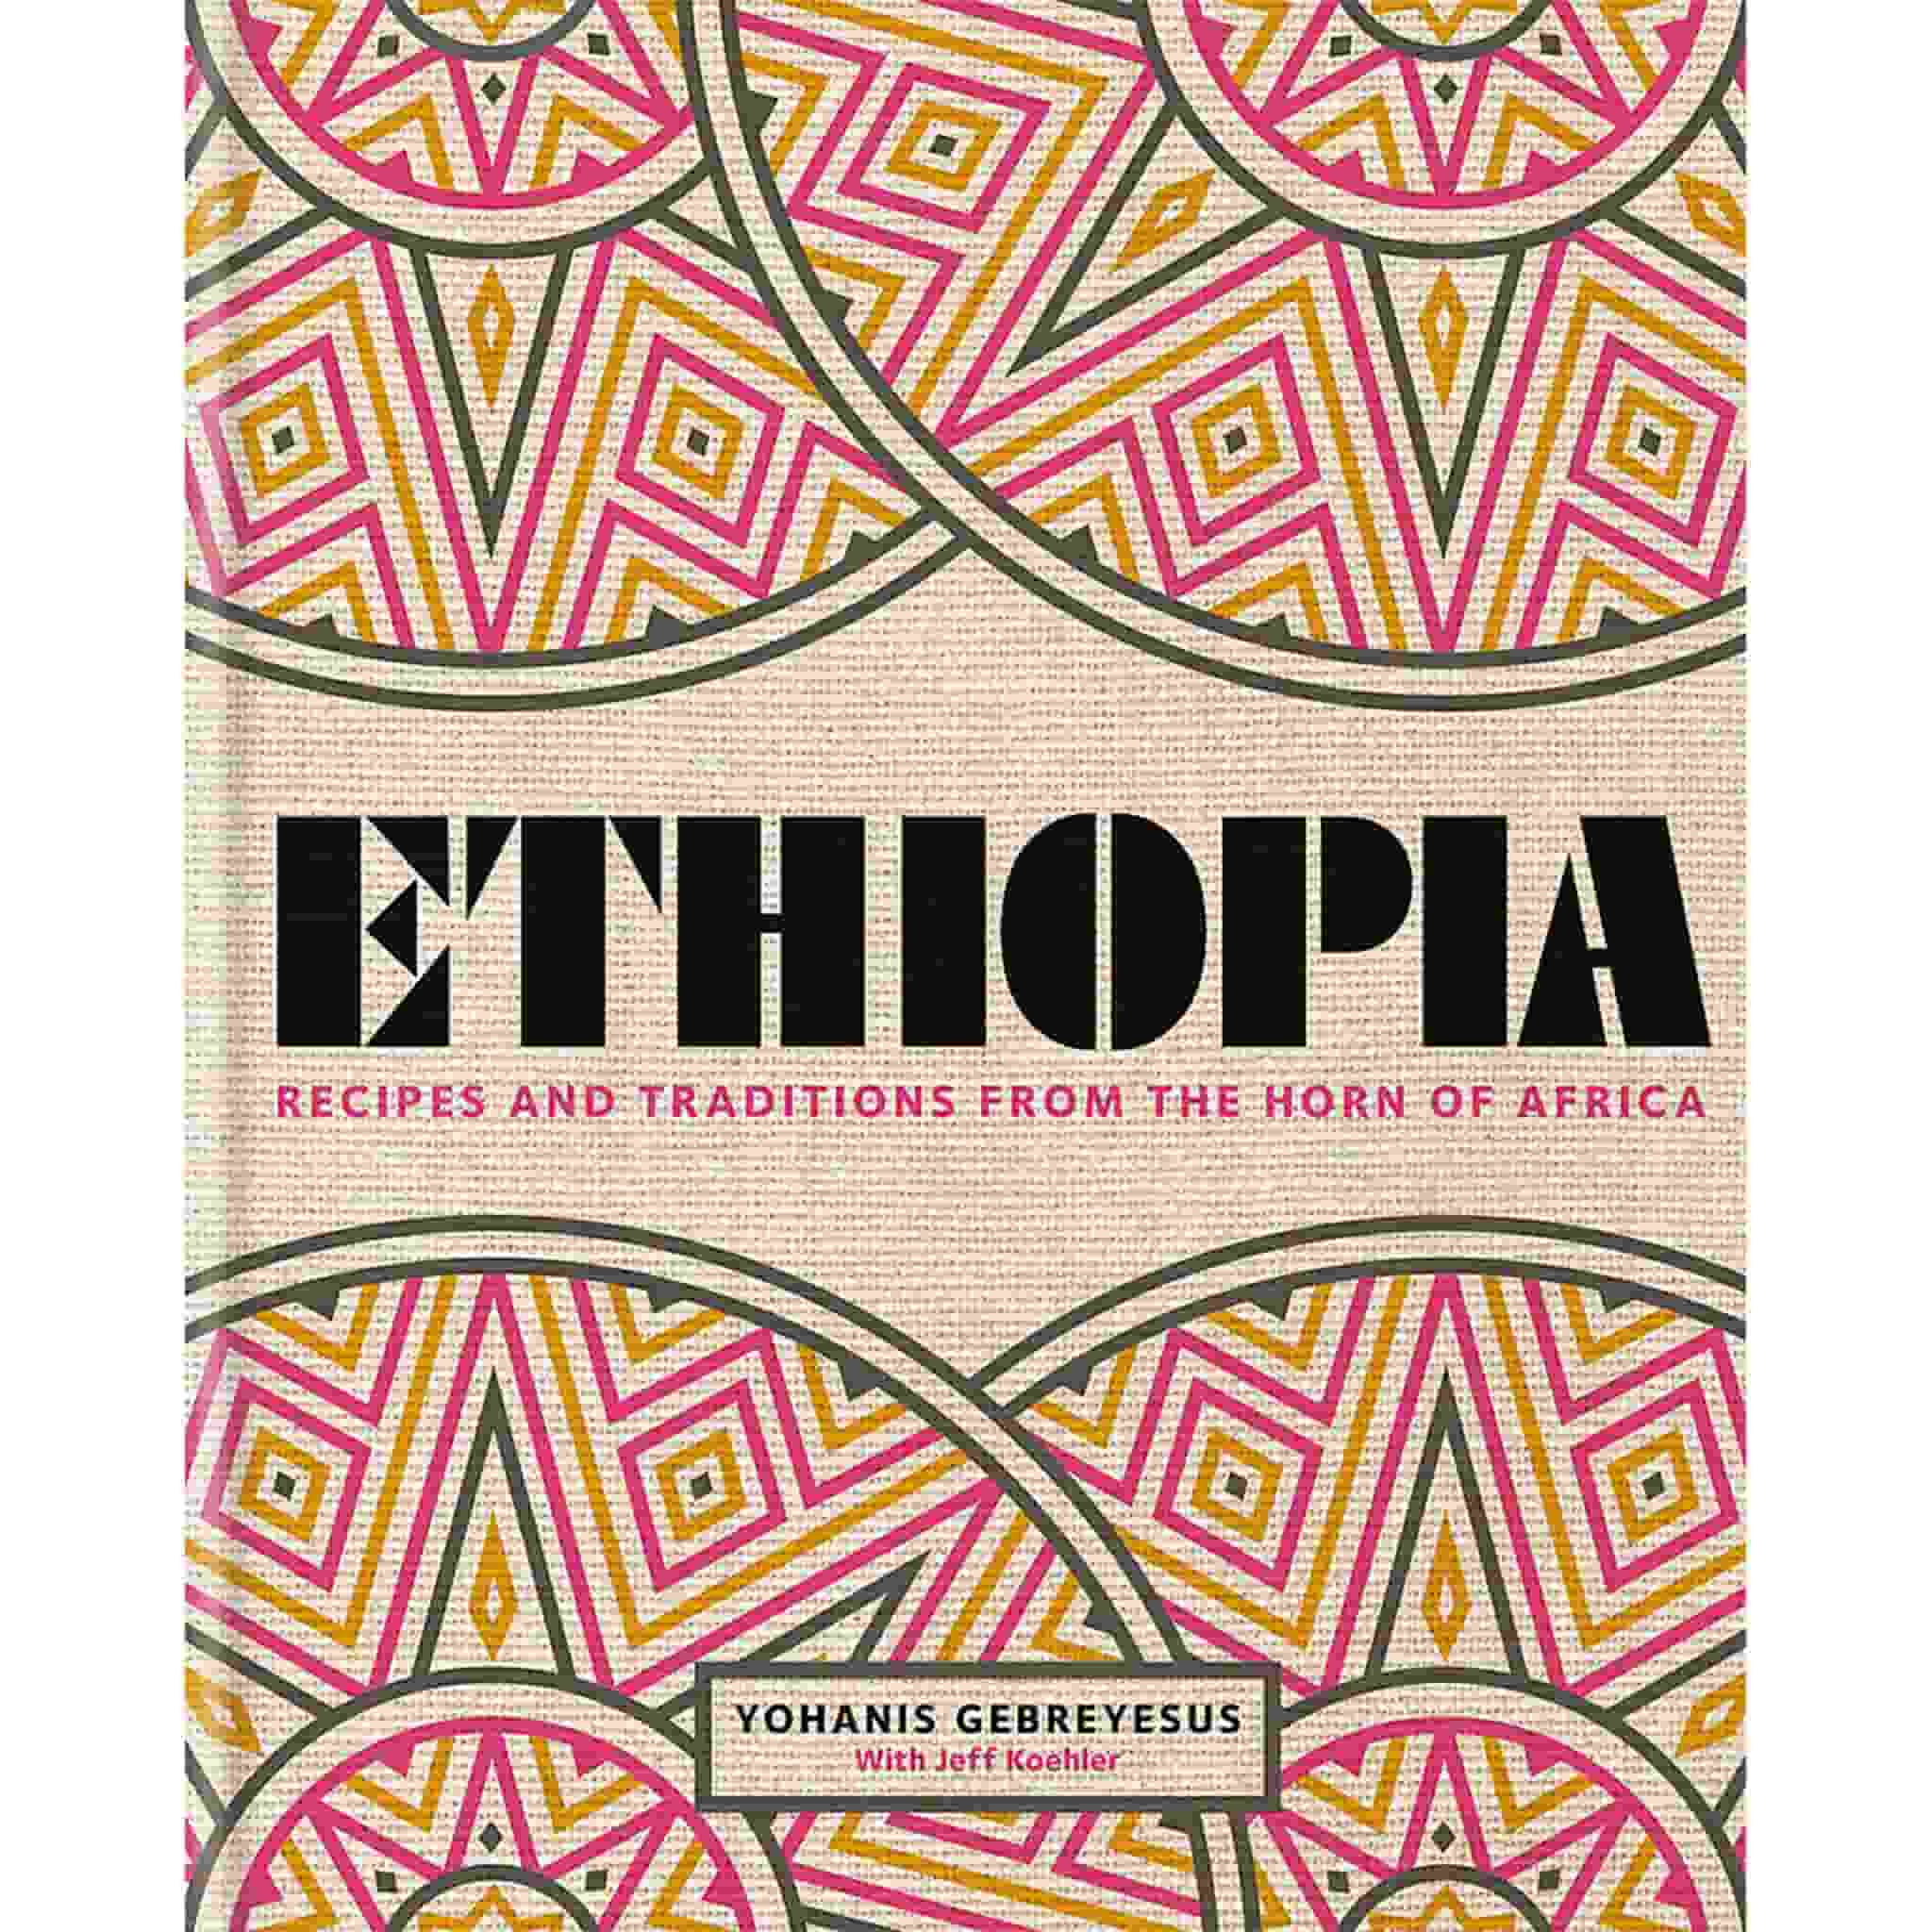 Ethiopia by Yohanis Gebreyesus